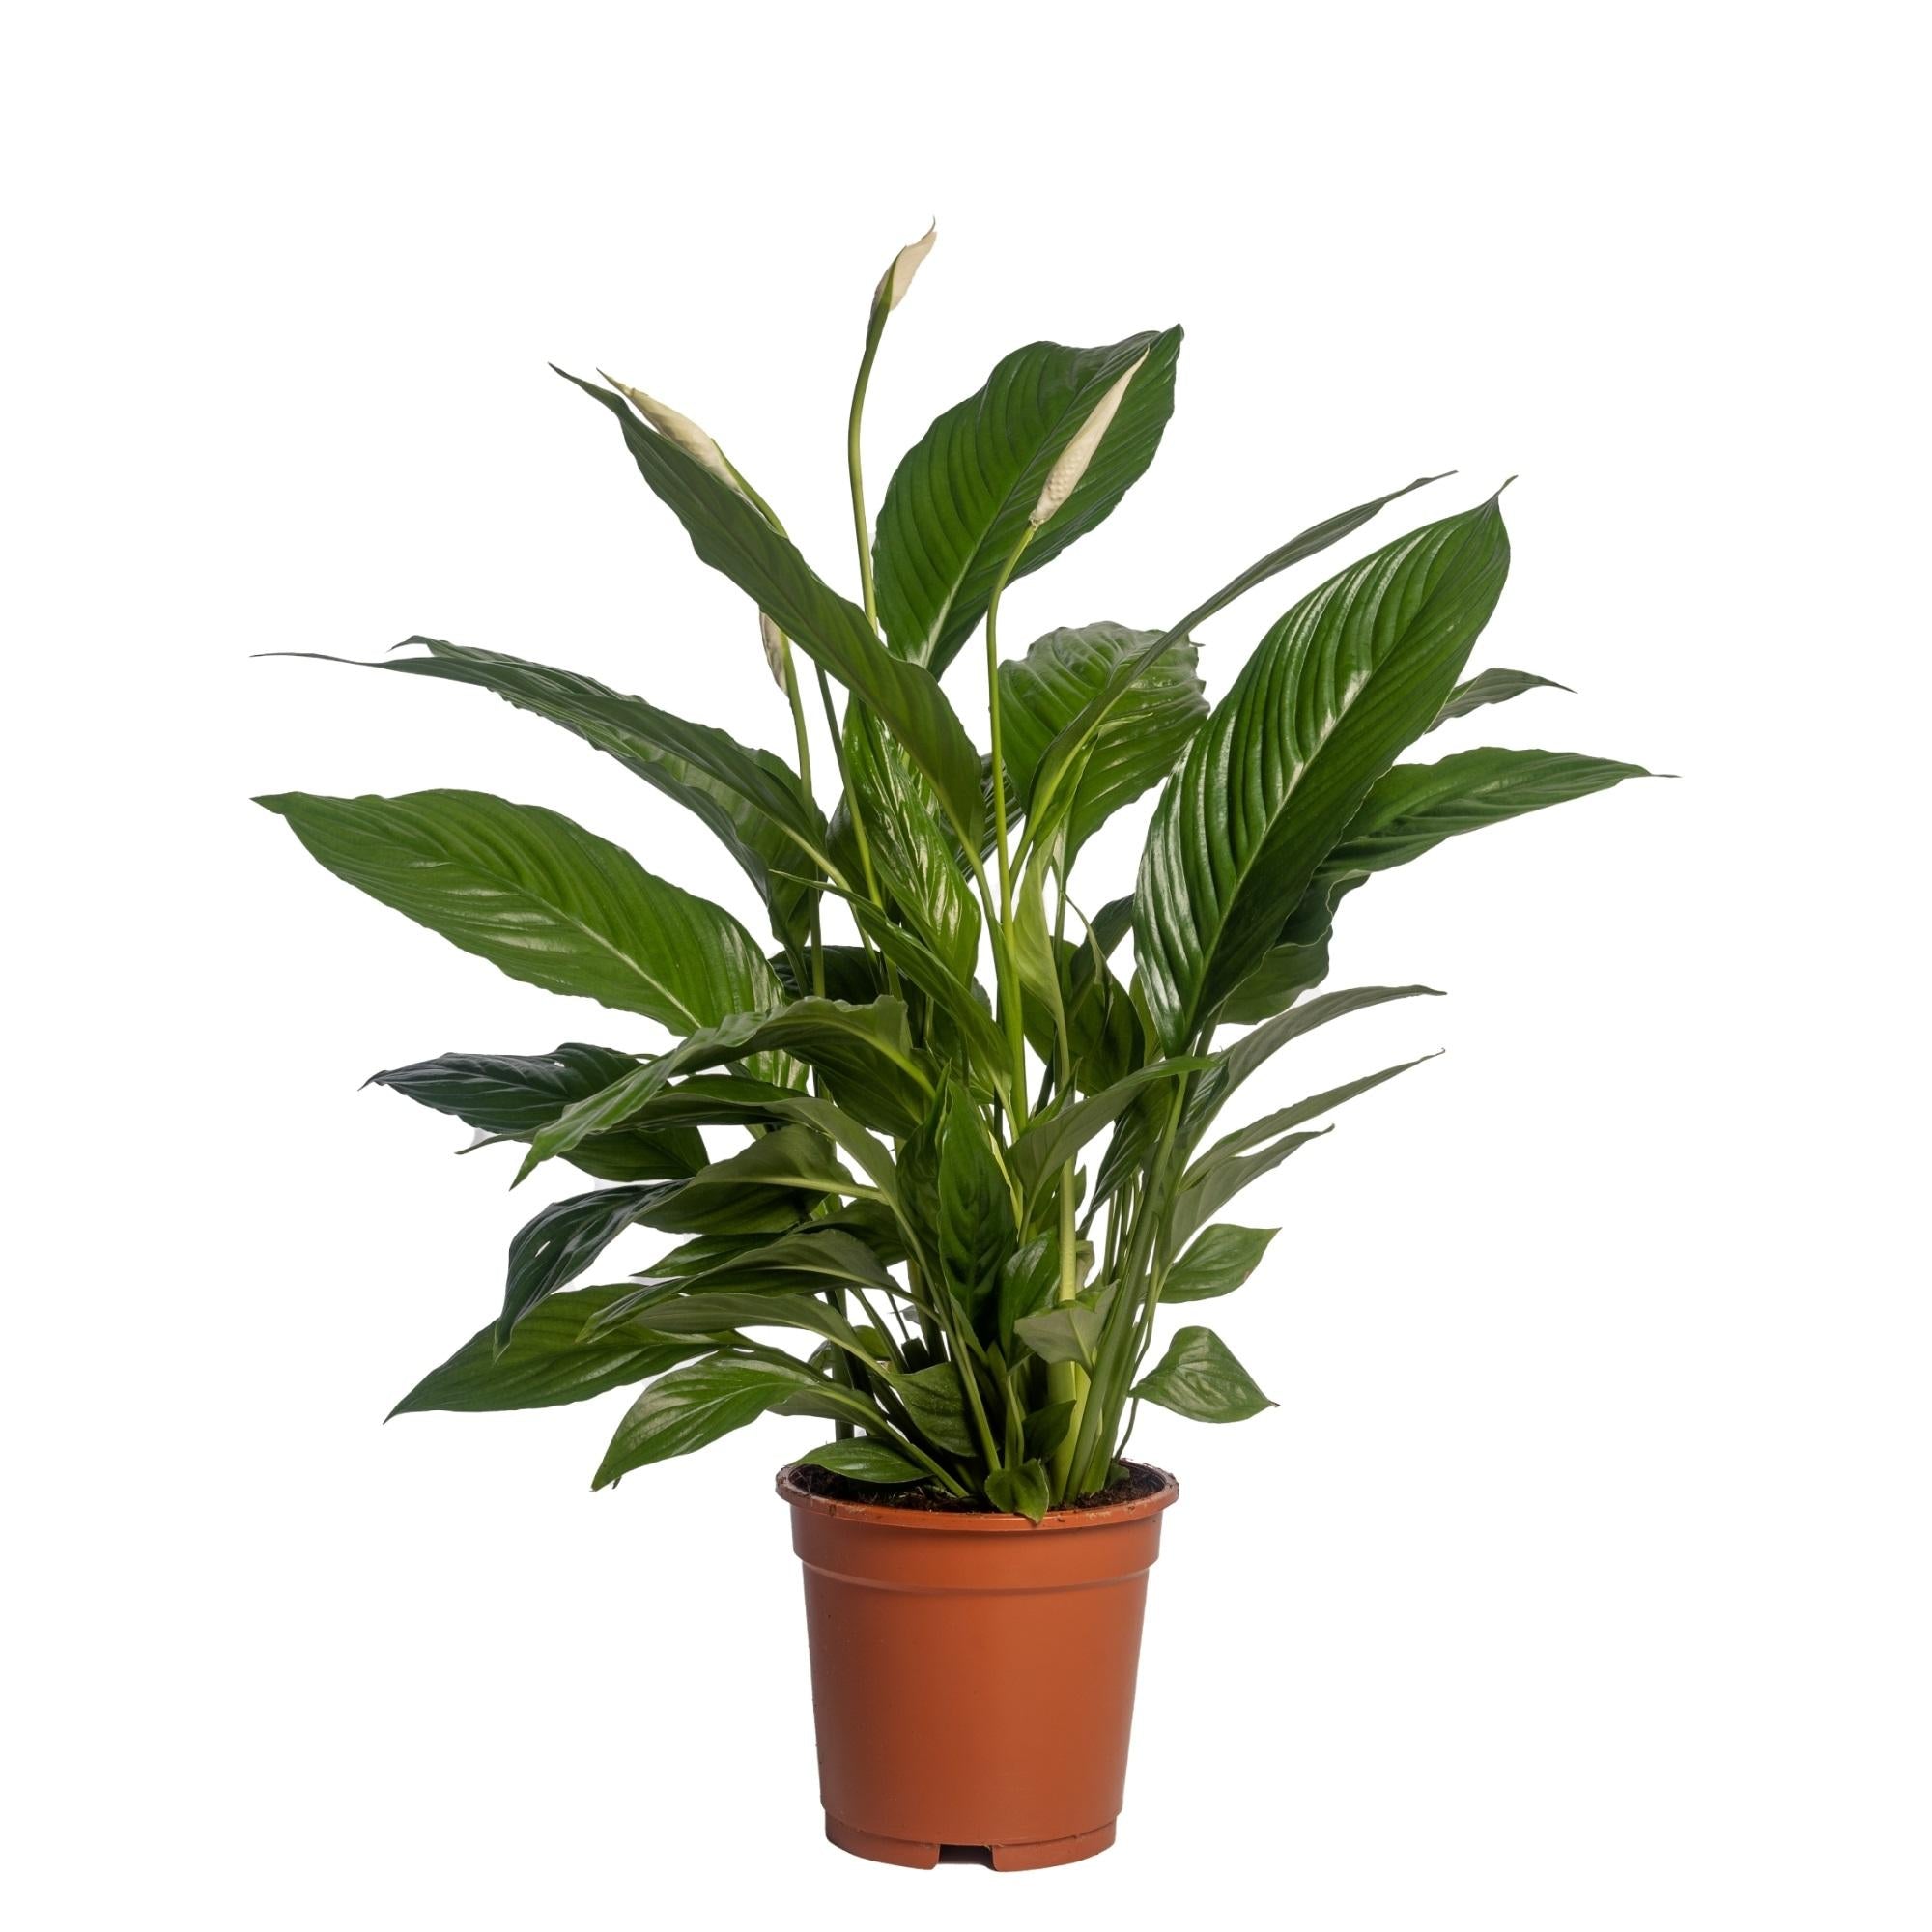 Plante d'intérieur - spathiphyllum 'vivaldi' 70.0cm